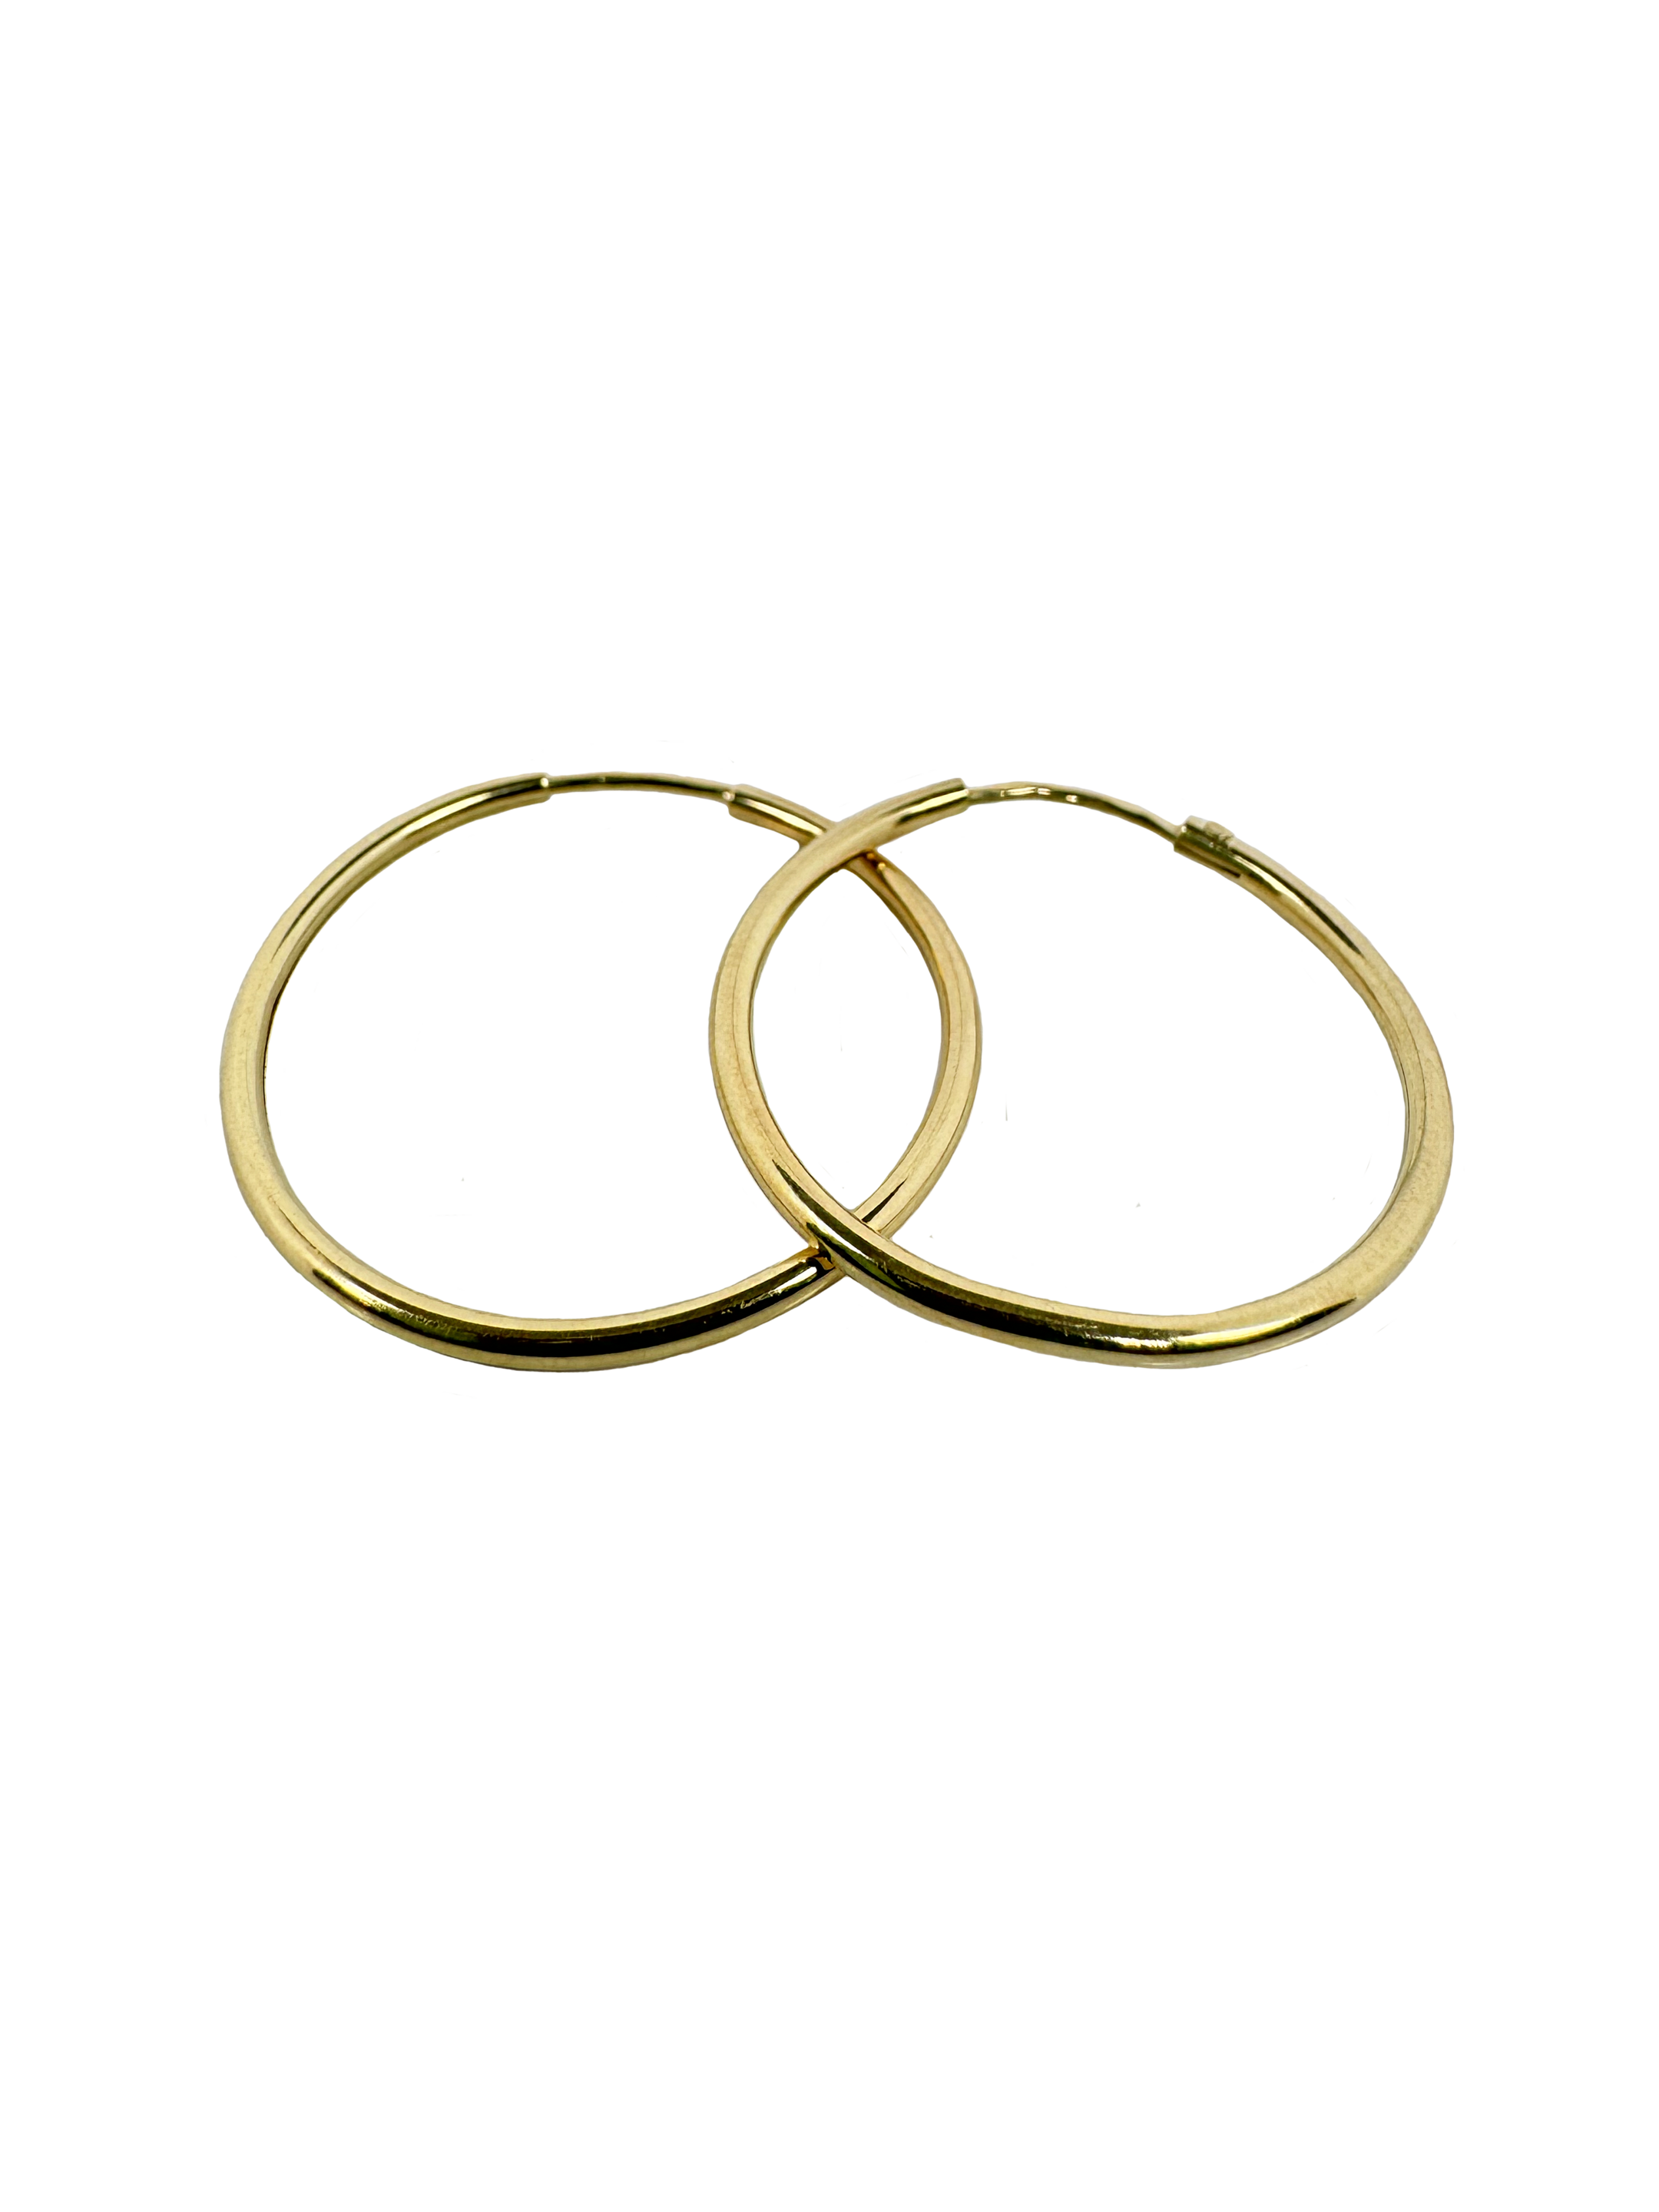 Παιδικά γυαλιστερά δαχτυλίδια χρυσά Rainey 25,8 mm